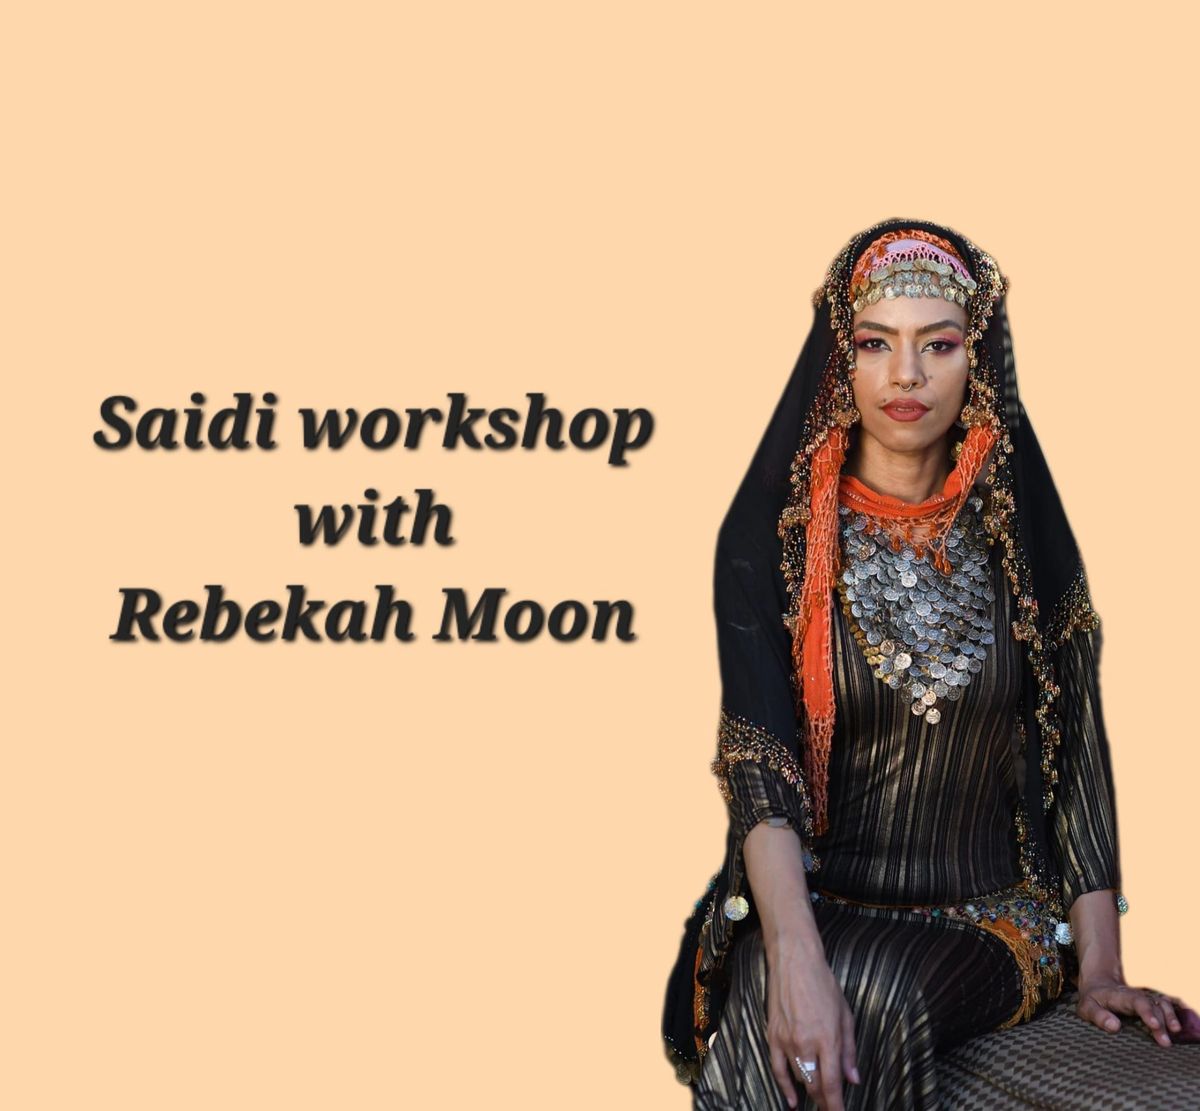 Saidi workshop